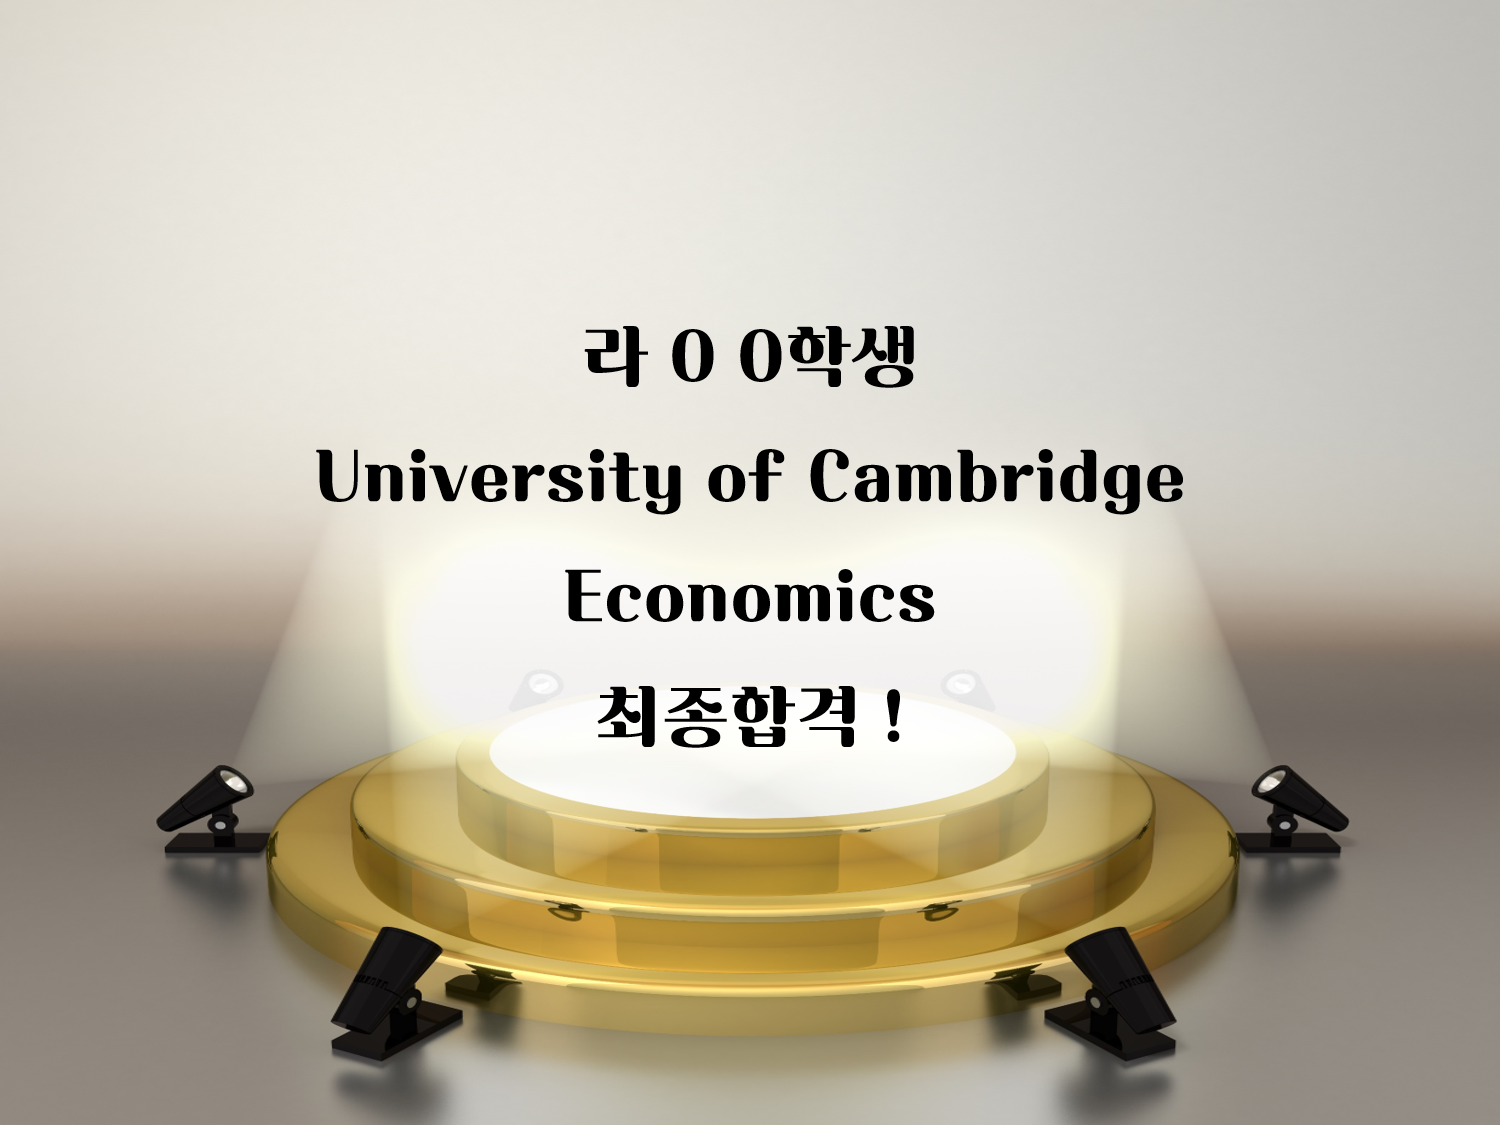 University of Cambridge: Economics